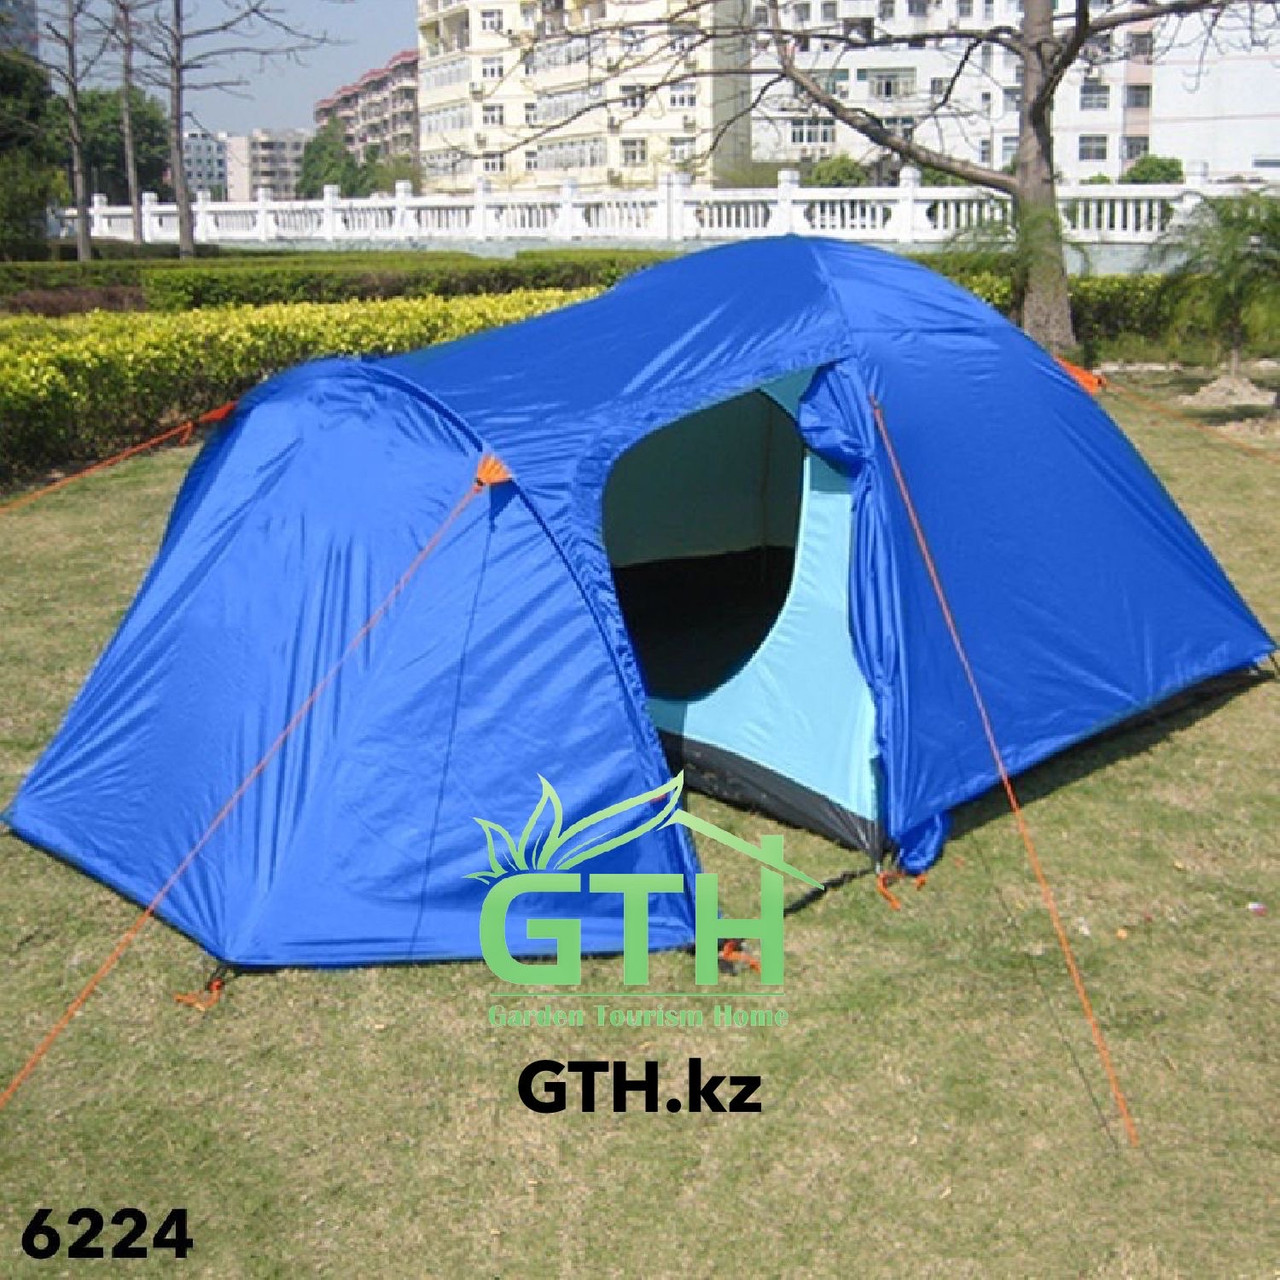 Двухслойная палатка на 4-х человек Tuohai-6224. 370x210x150 см. Доставка.